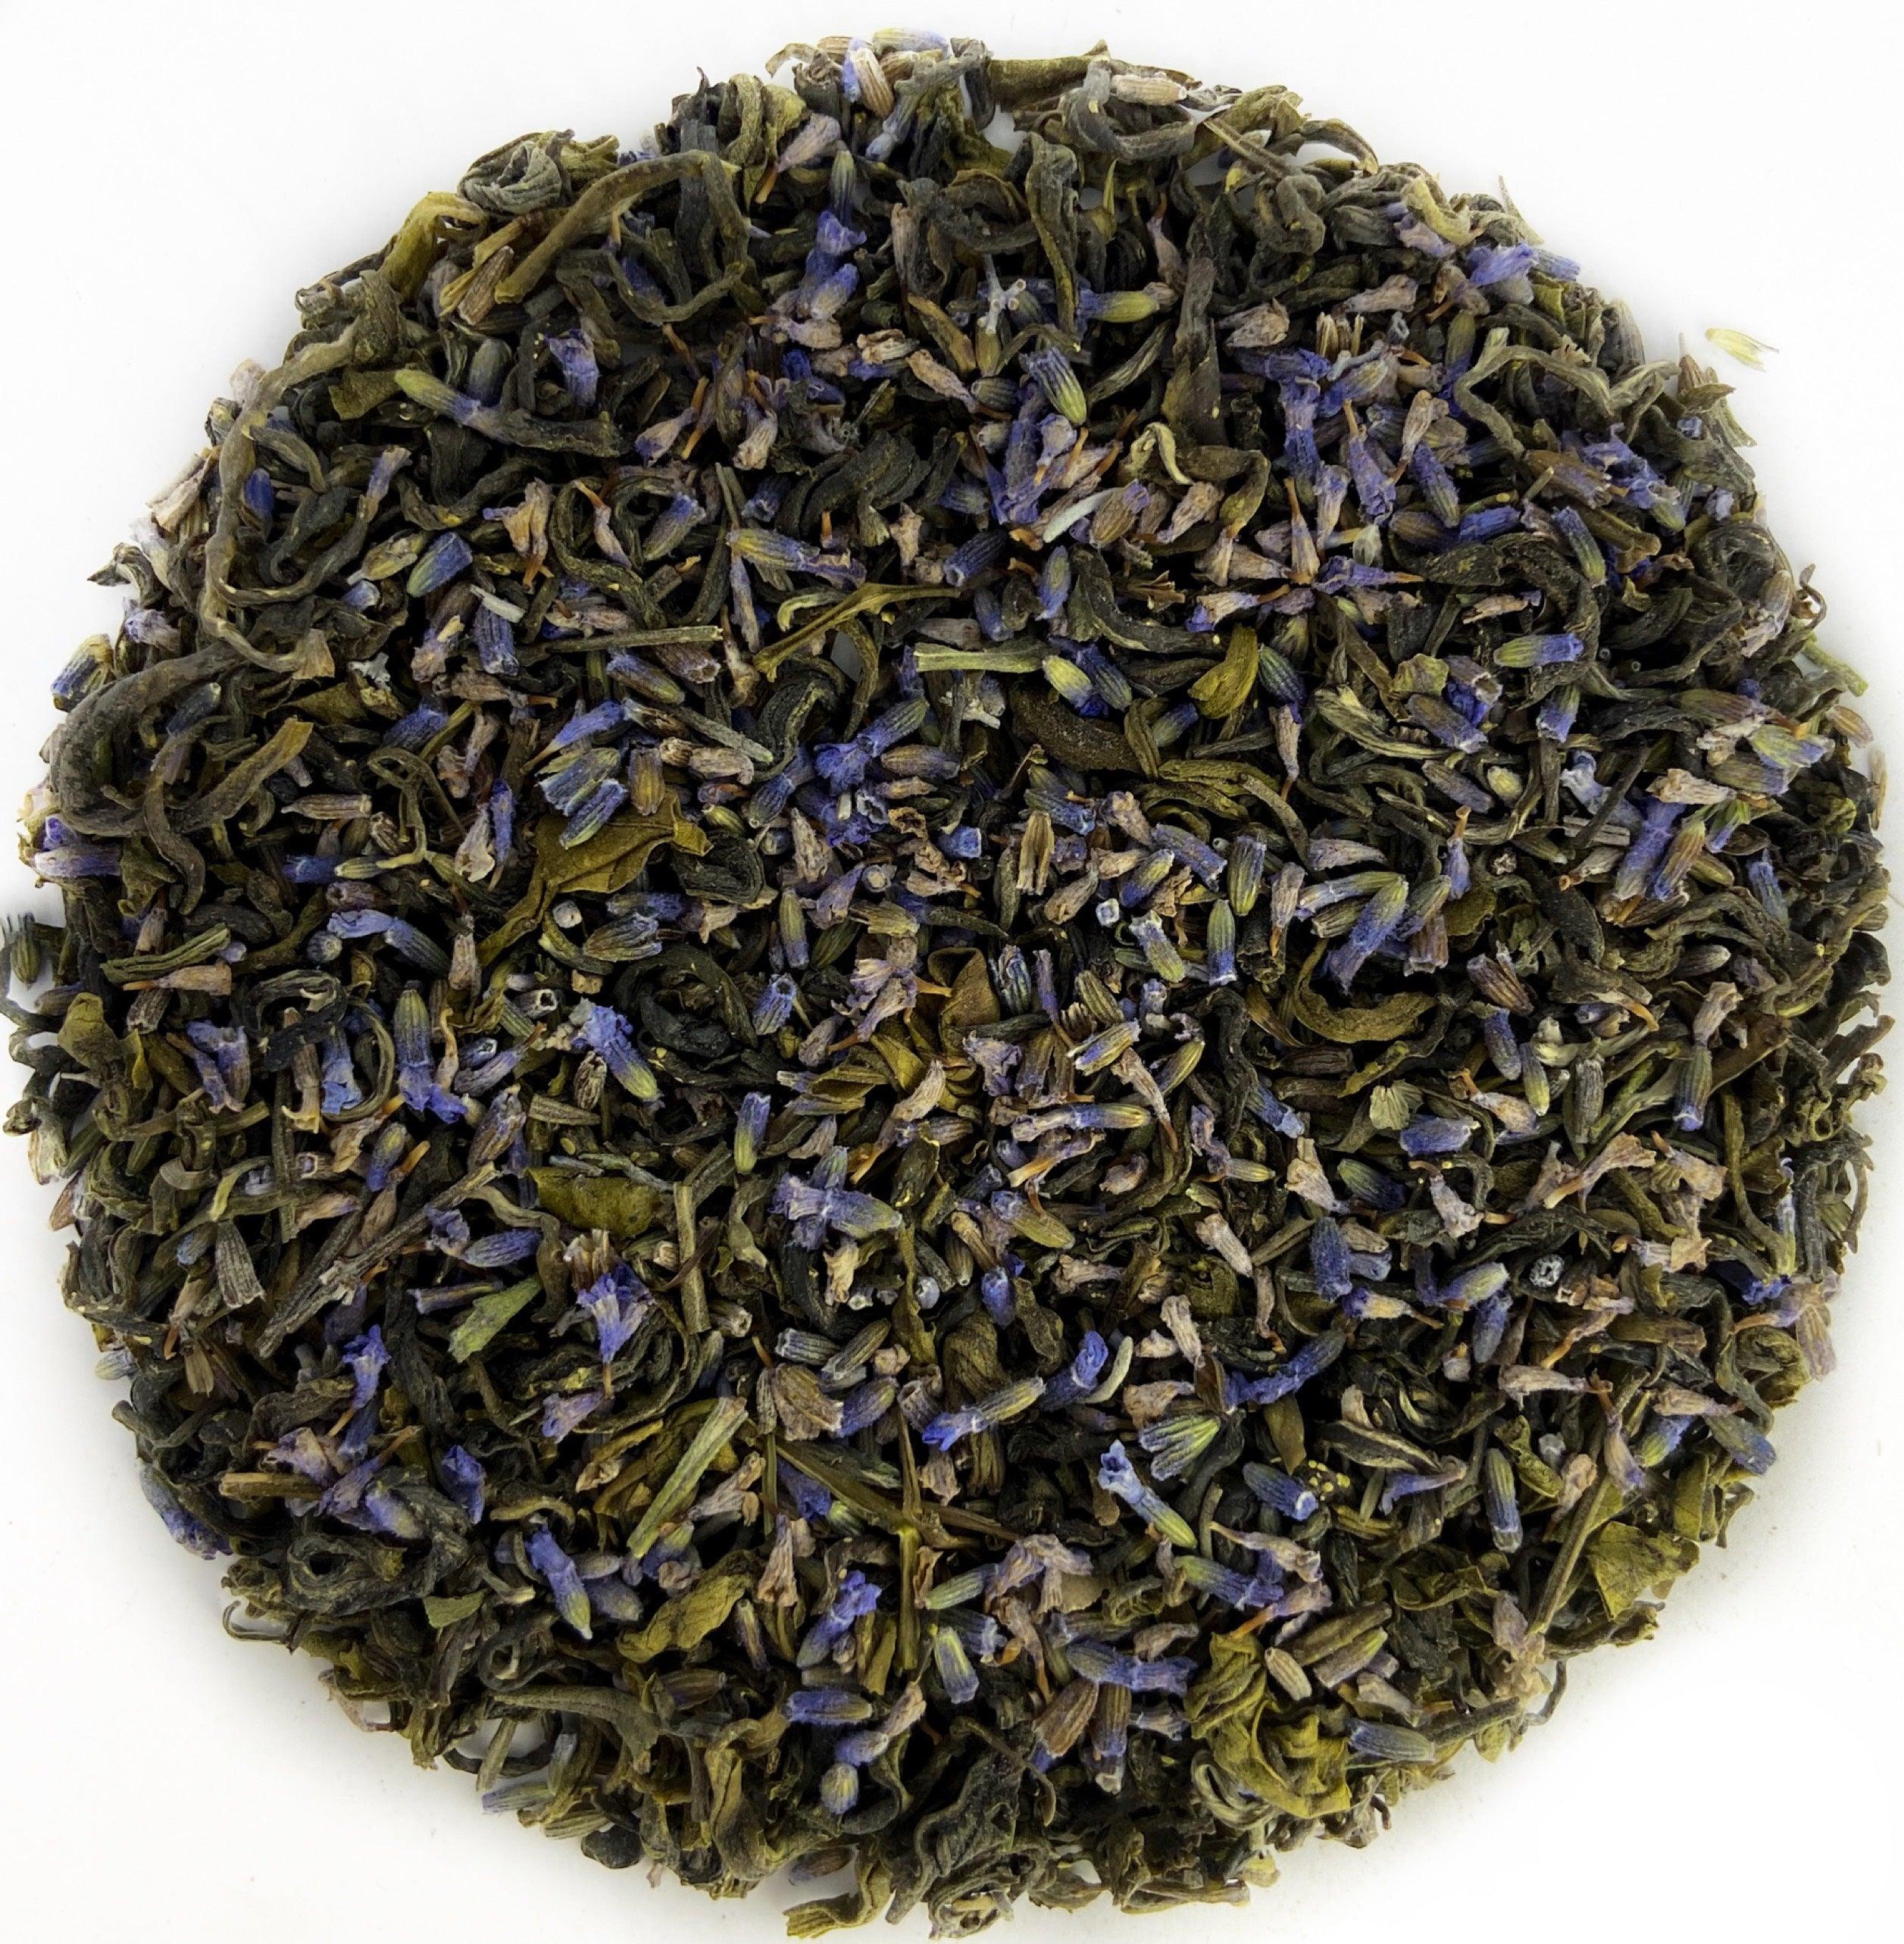 Lavender Mist Green Tea - darjeelingsips